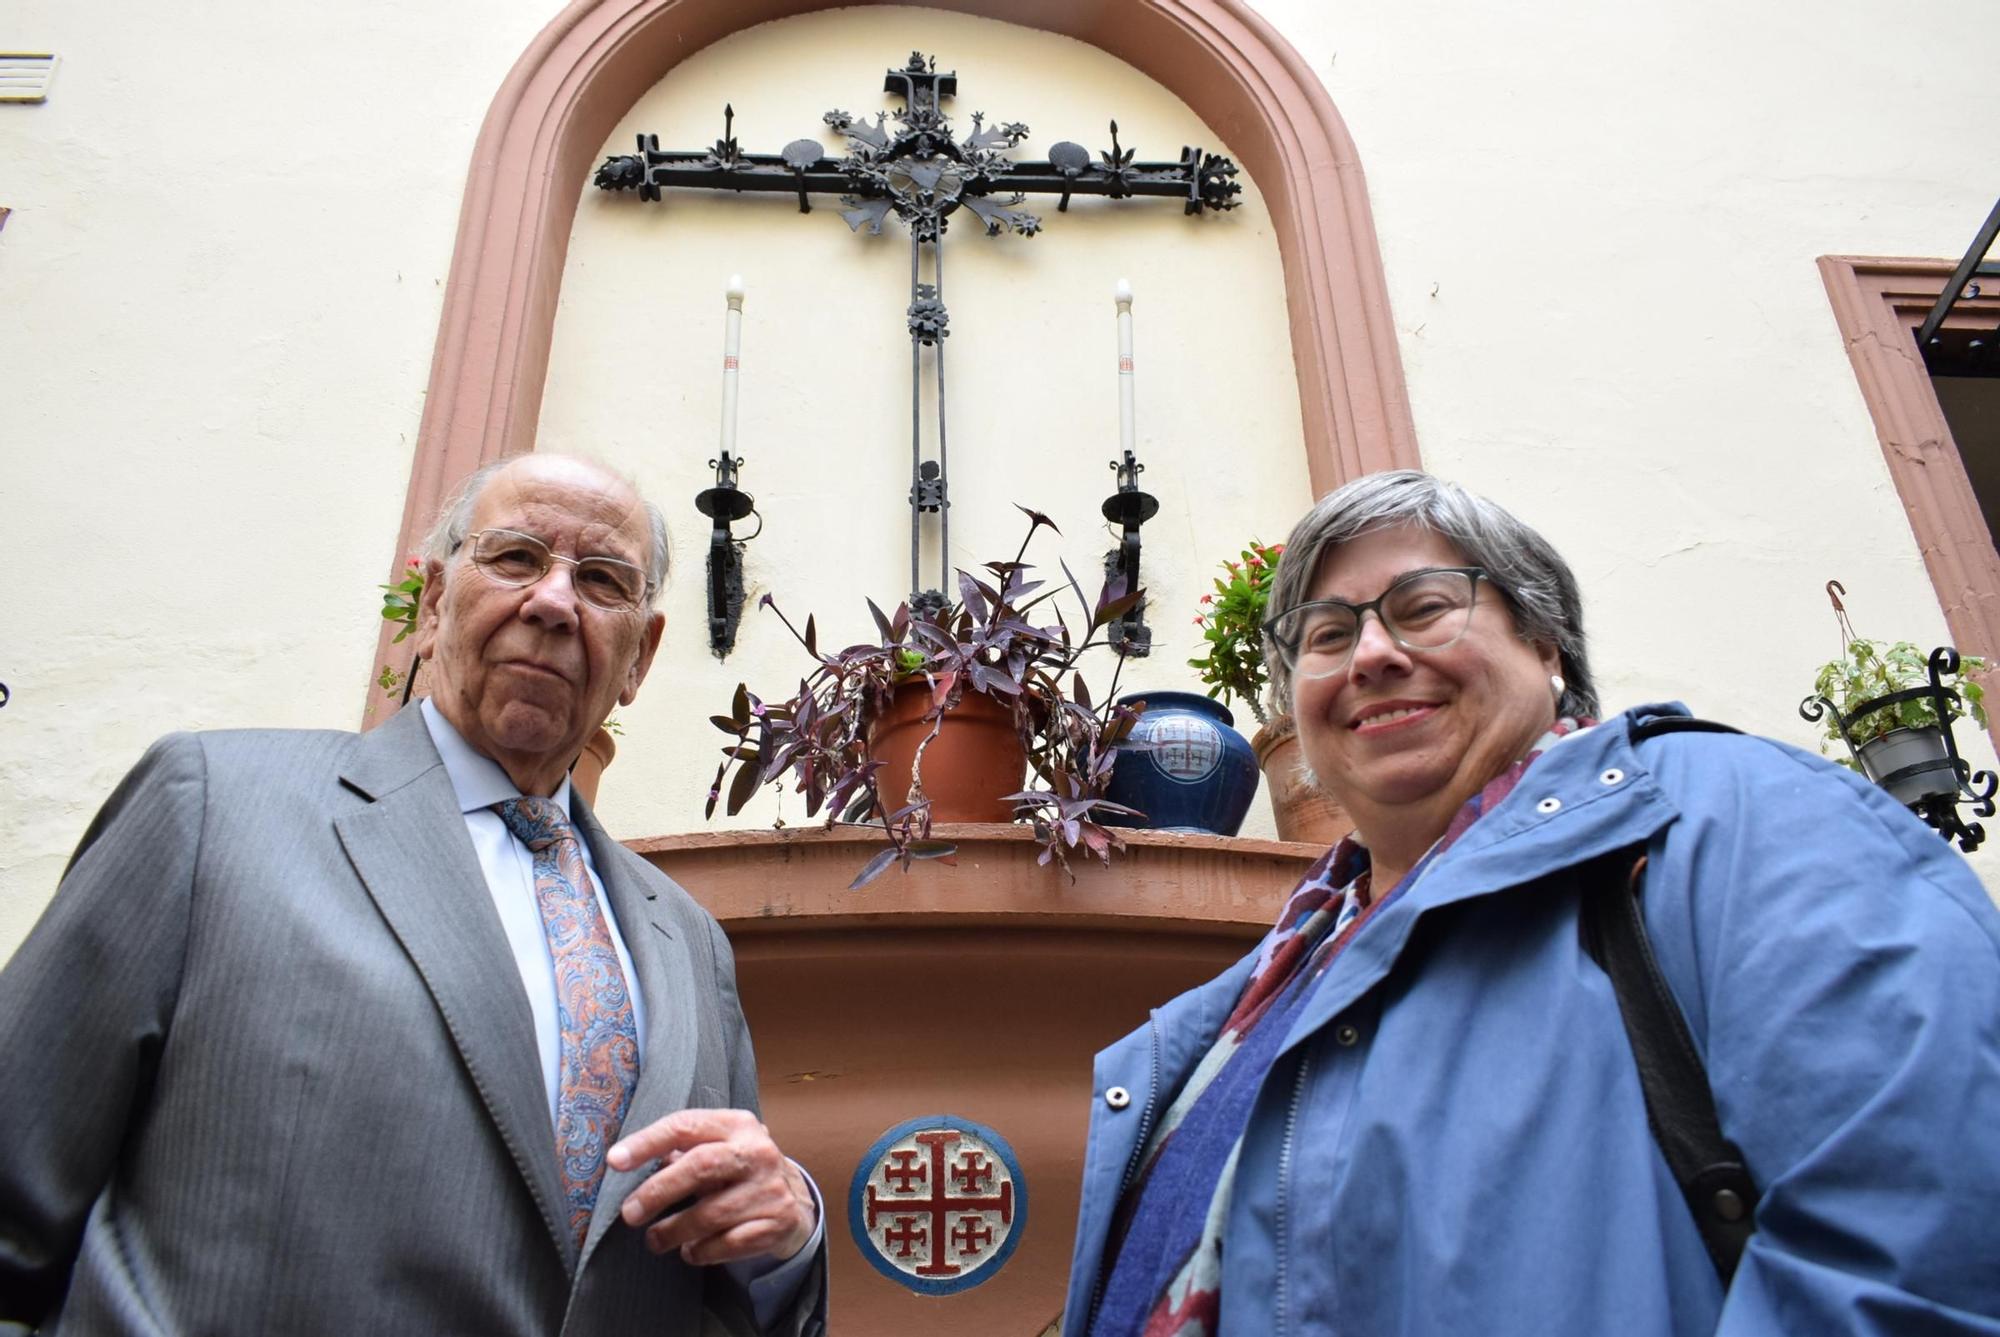 Joaquín Delgado-Roig y Ana María Ruiz Copete en el patio de la Iglesia de San Antonio Abad en Sevilla.